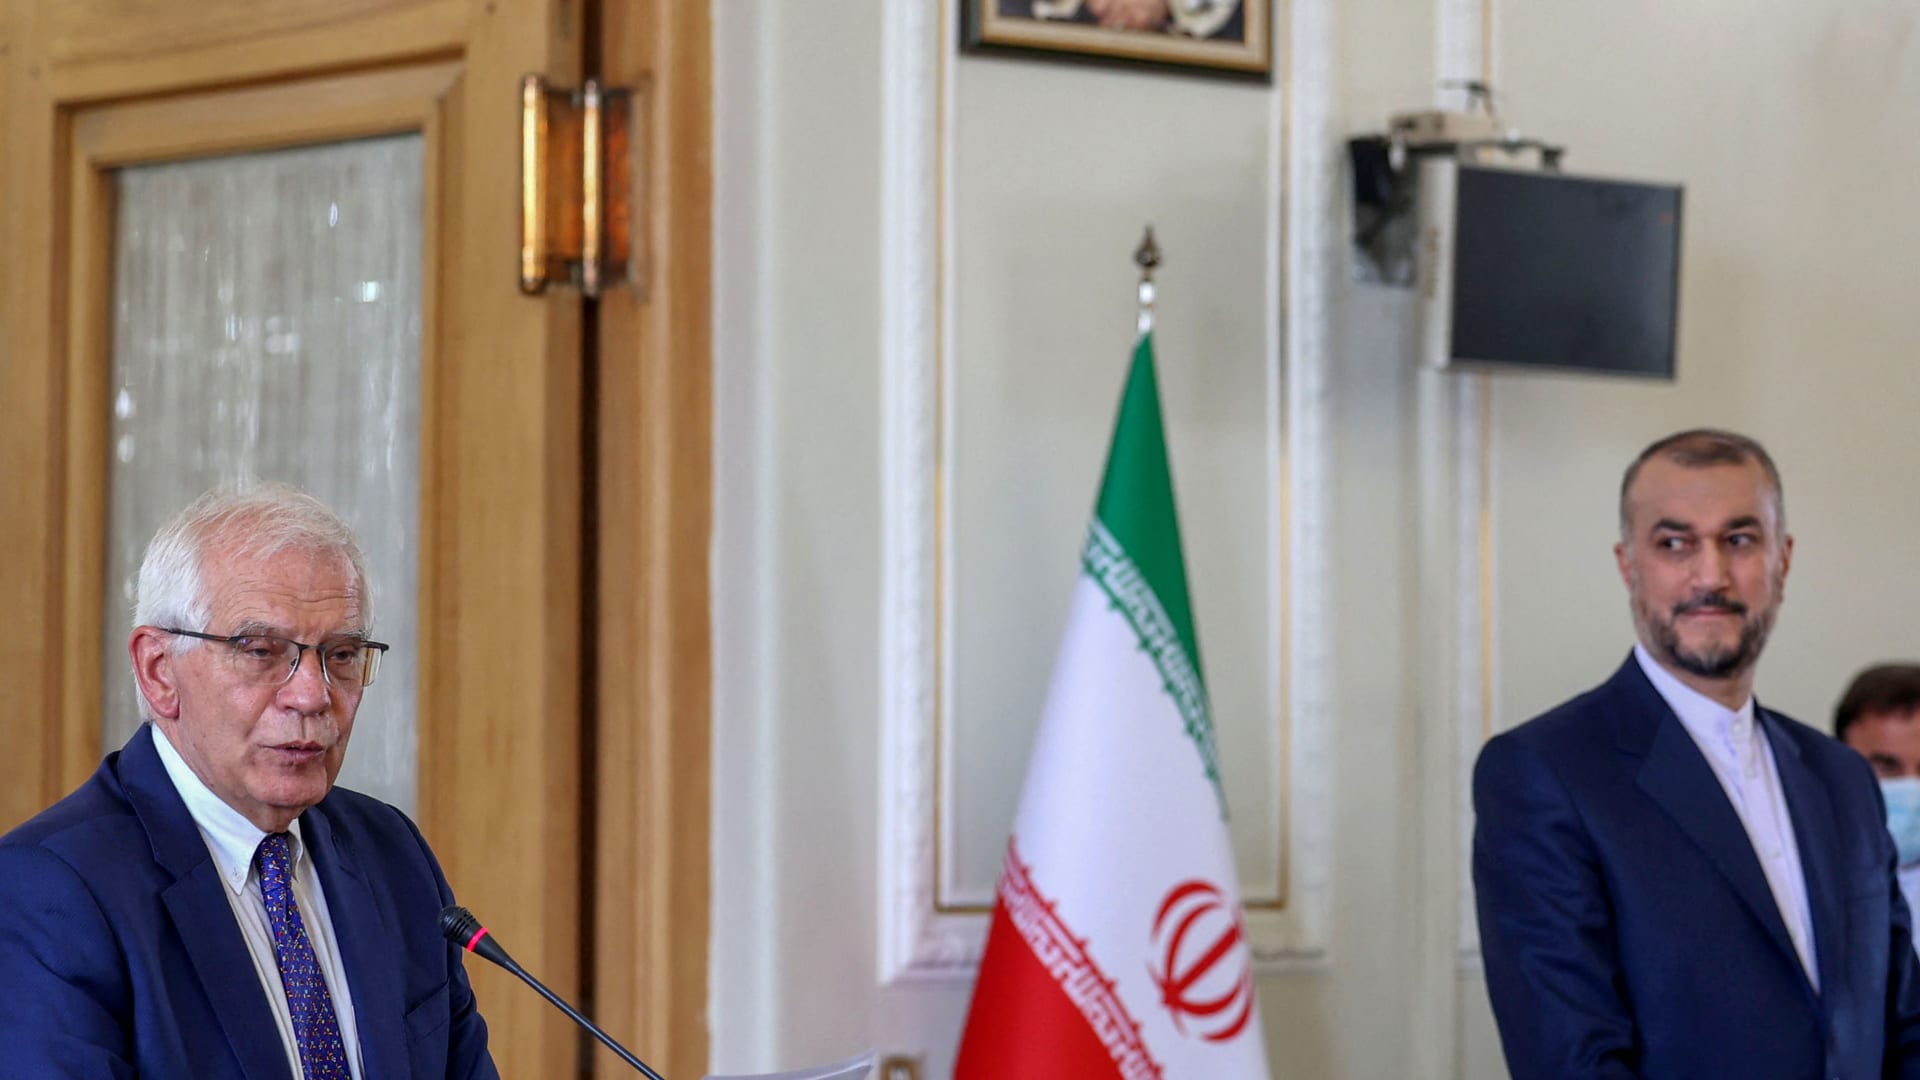 بيان أوروبي: "شكوك جدية" حول حرص إيران على التوصل إلى اتفاق بشأن برنامجها النووي